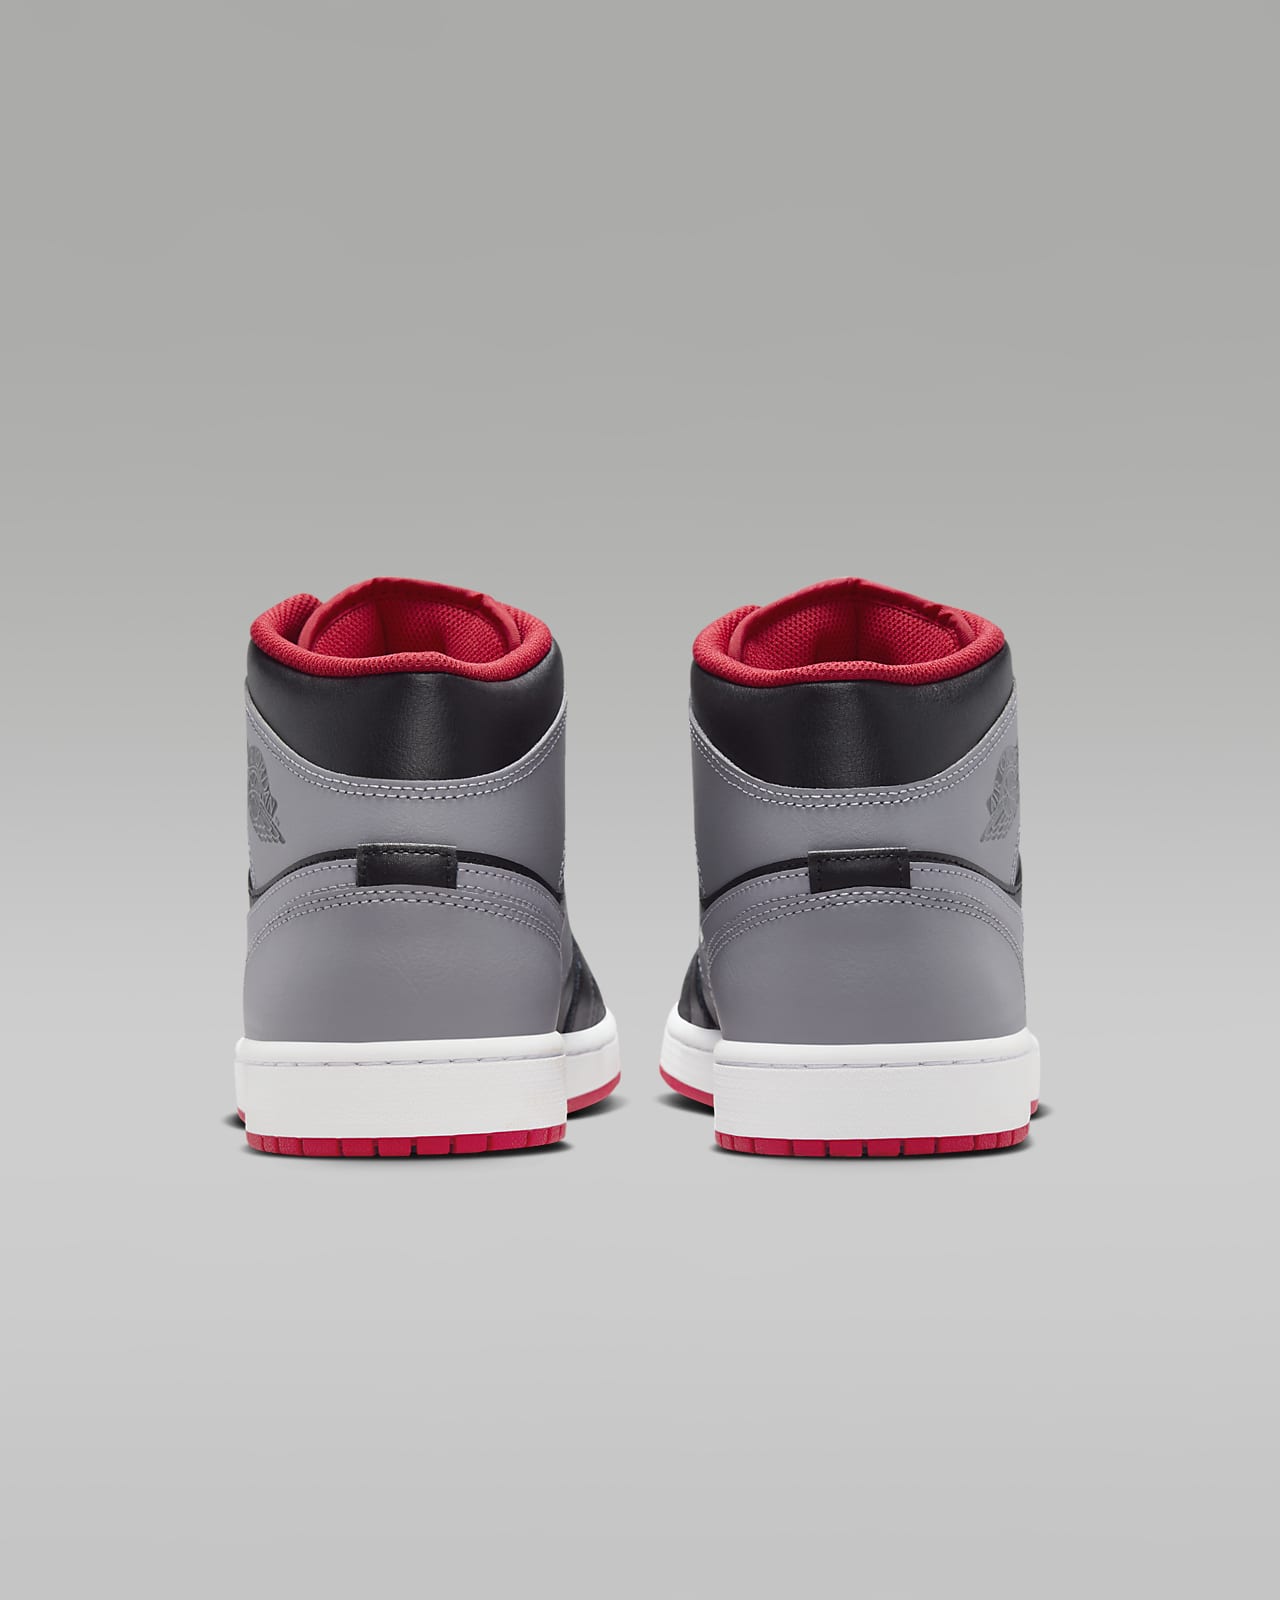 Jordan 1 Calzado. Nike US